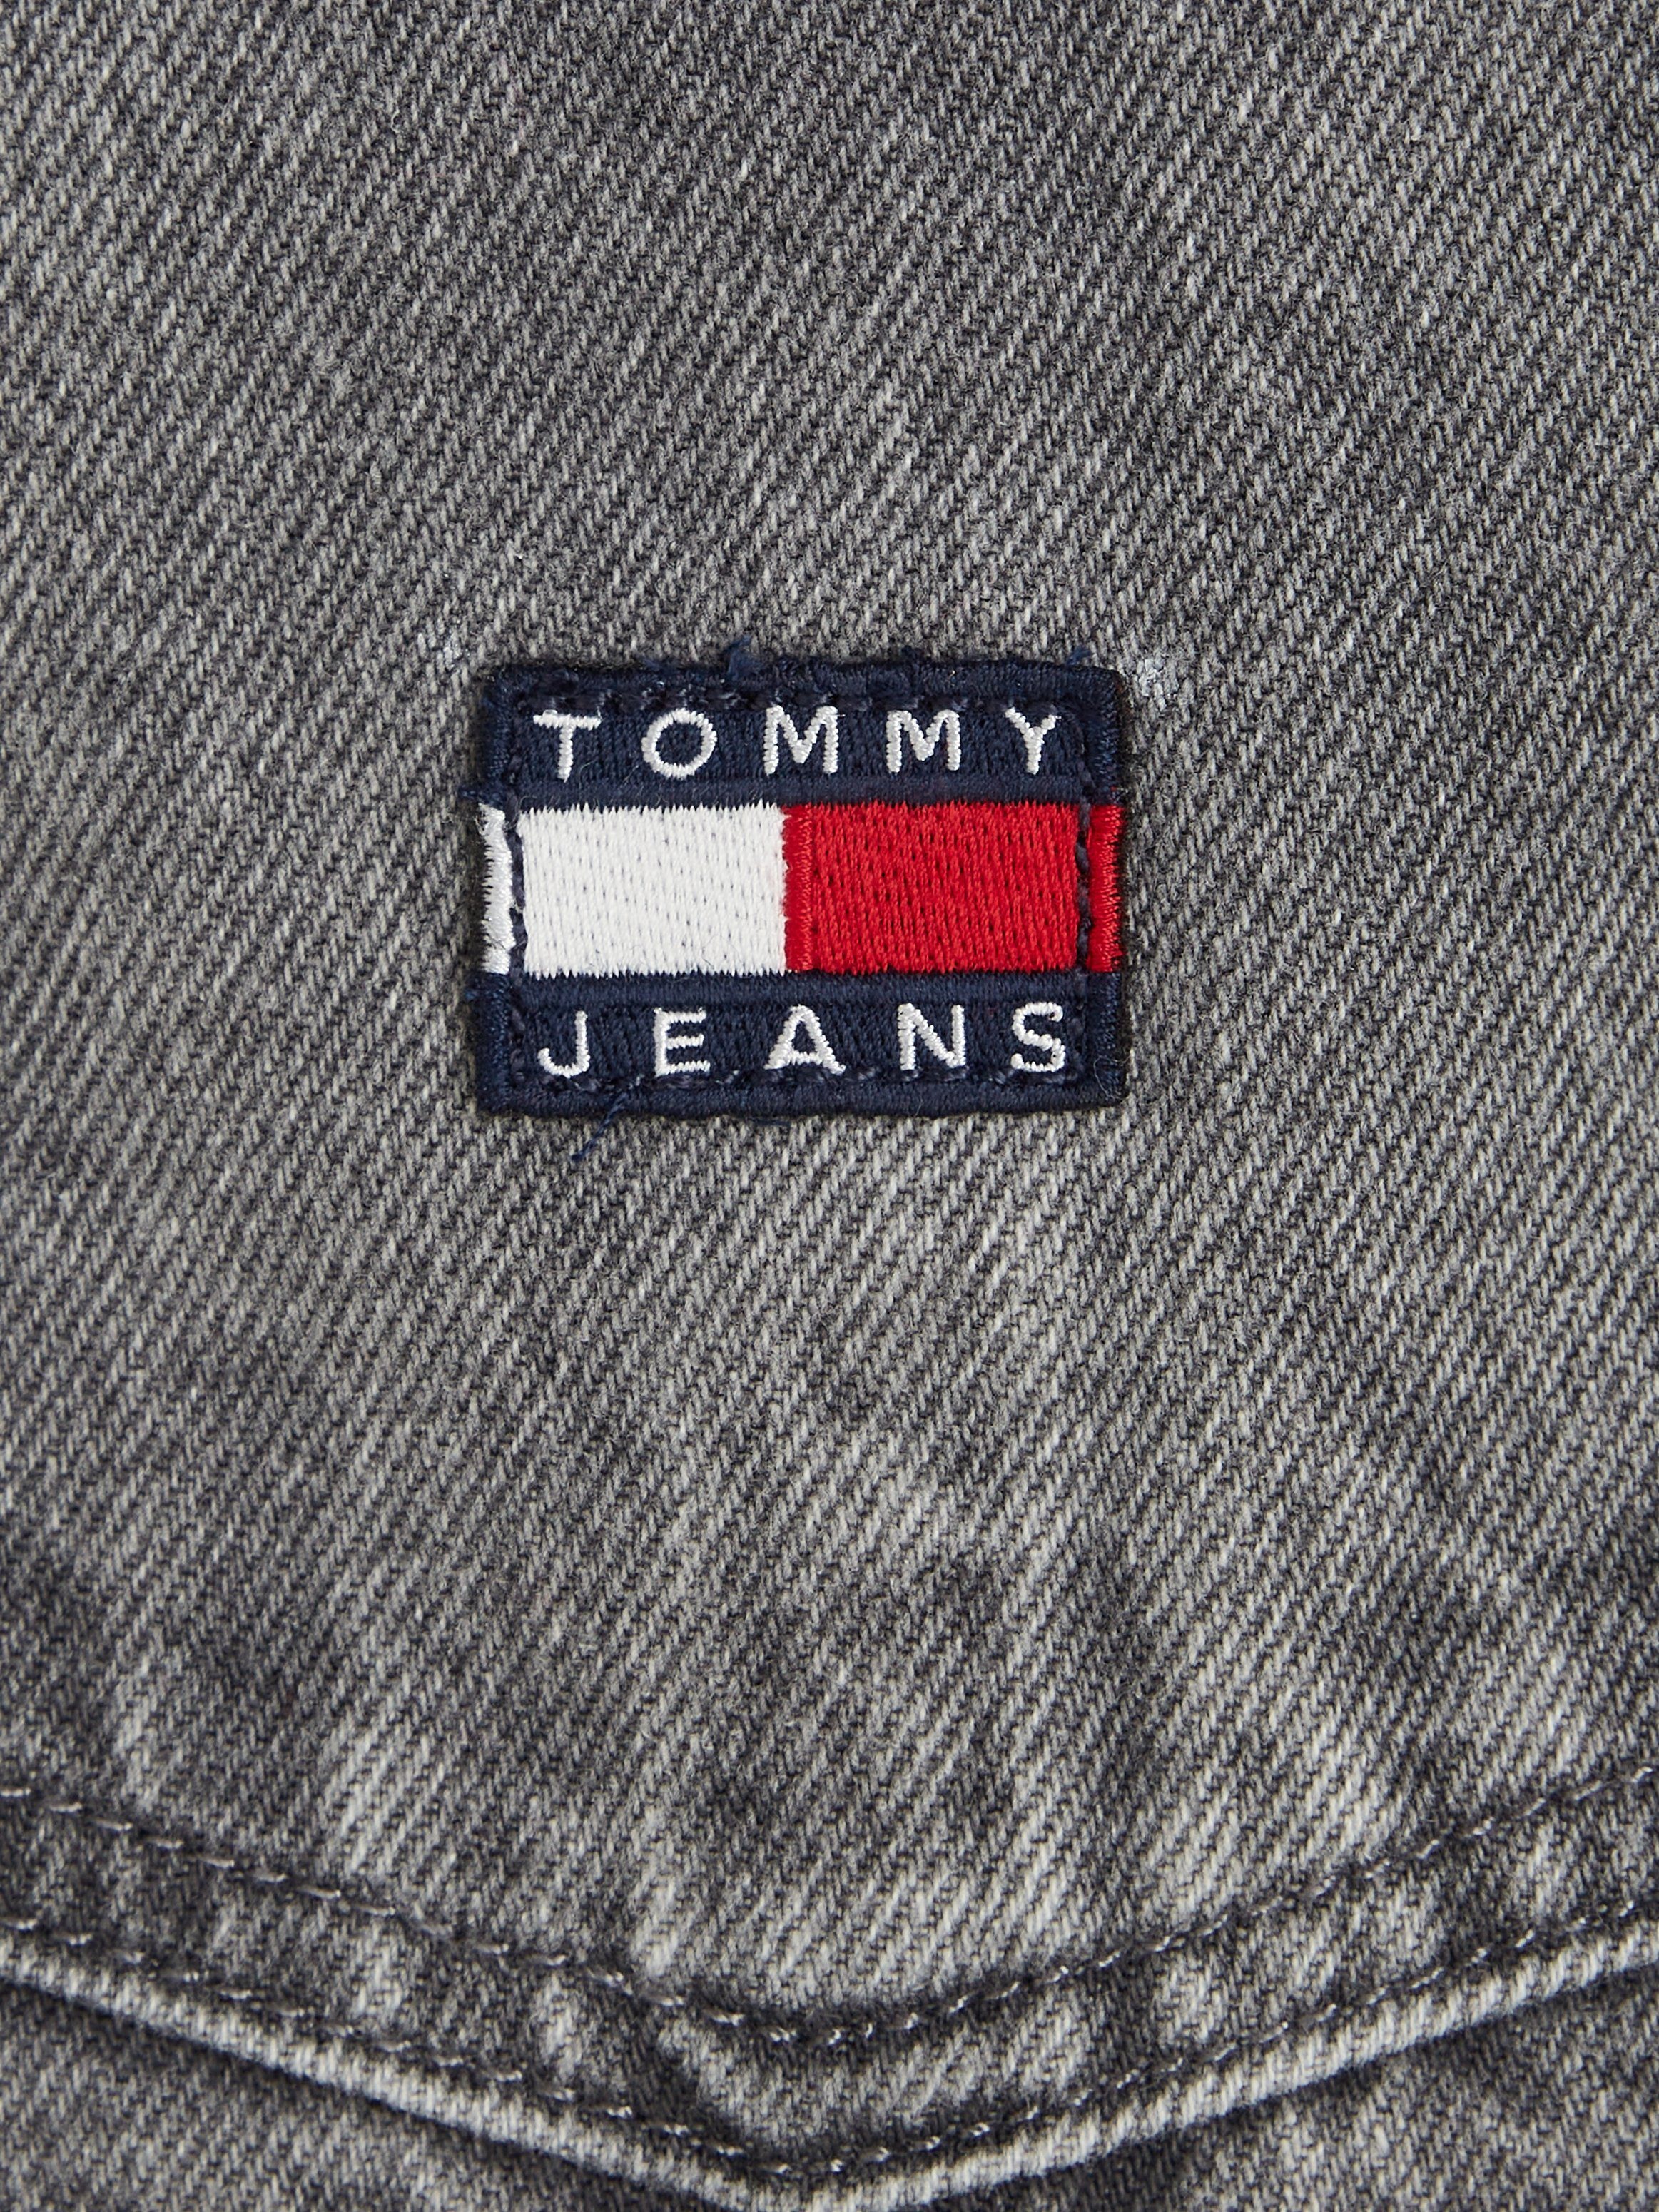 Tommy Jeans Jeanskleid PINAFORE DRESS mit Markenlabel Tommy DG4072 Jeans